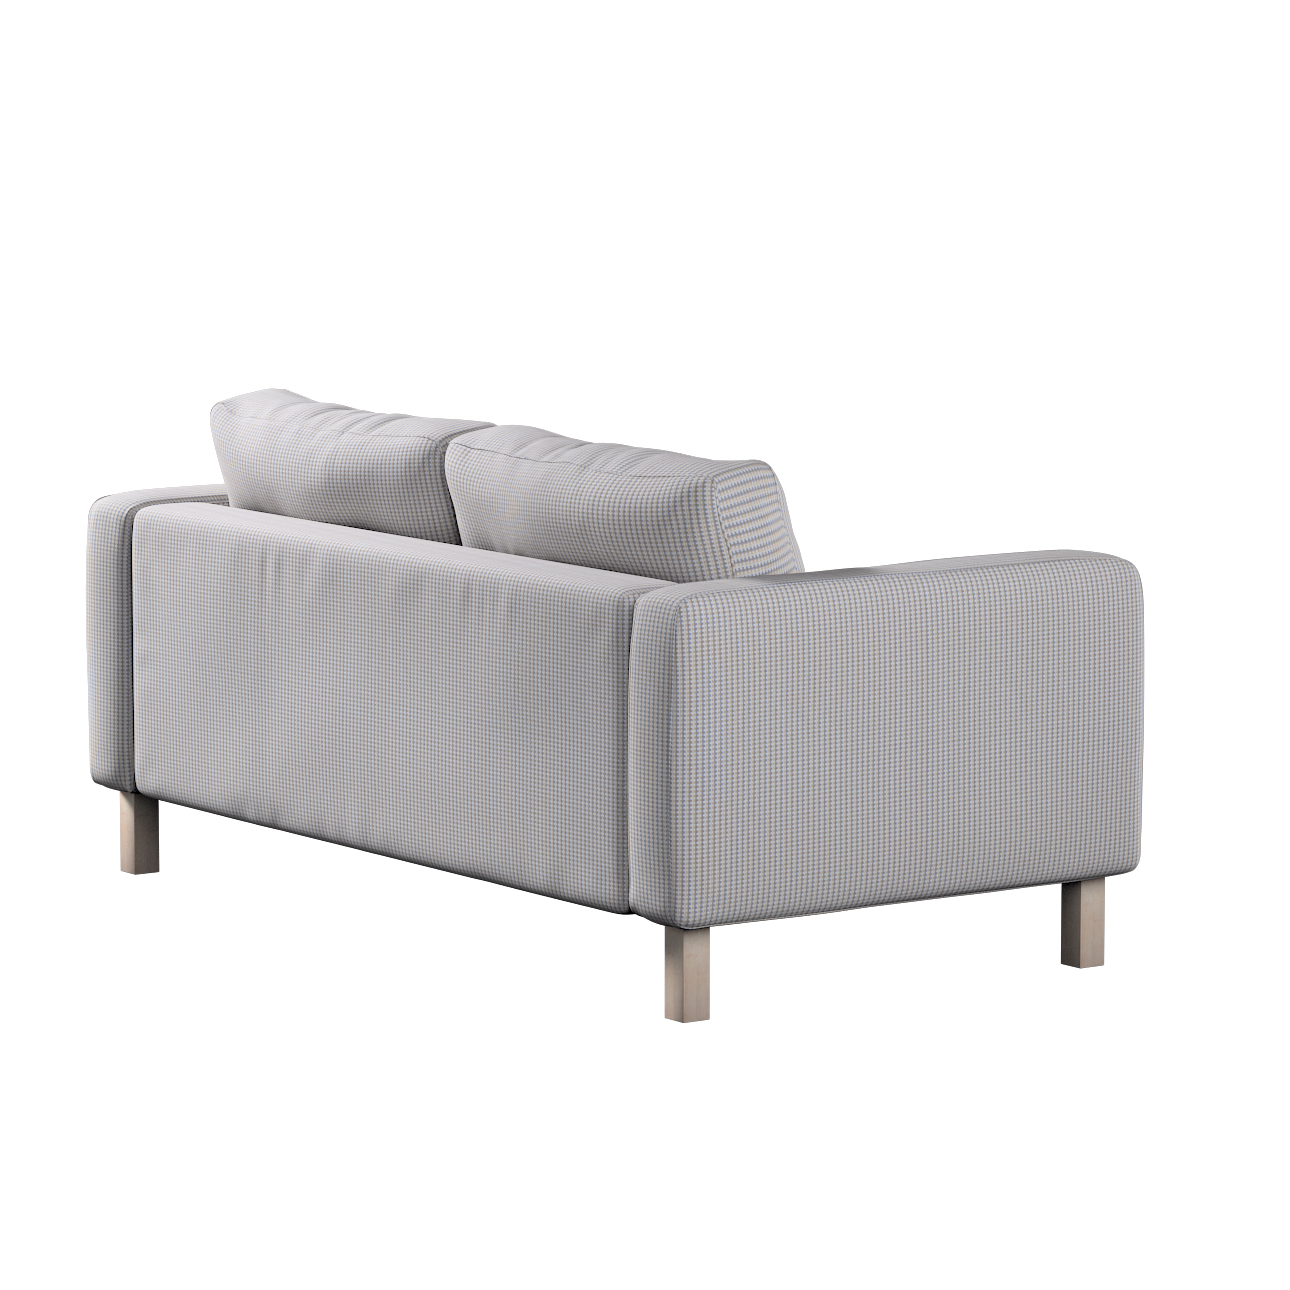 Bezug für Karlstad 2-Sitzer Sofa nicht ausklappbar, beige-blau, Sofahusse, günstig online kaufen